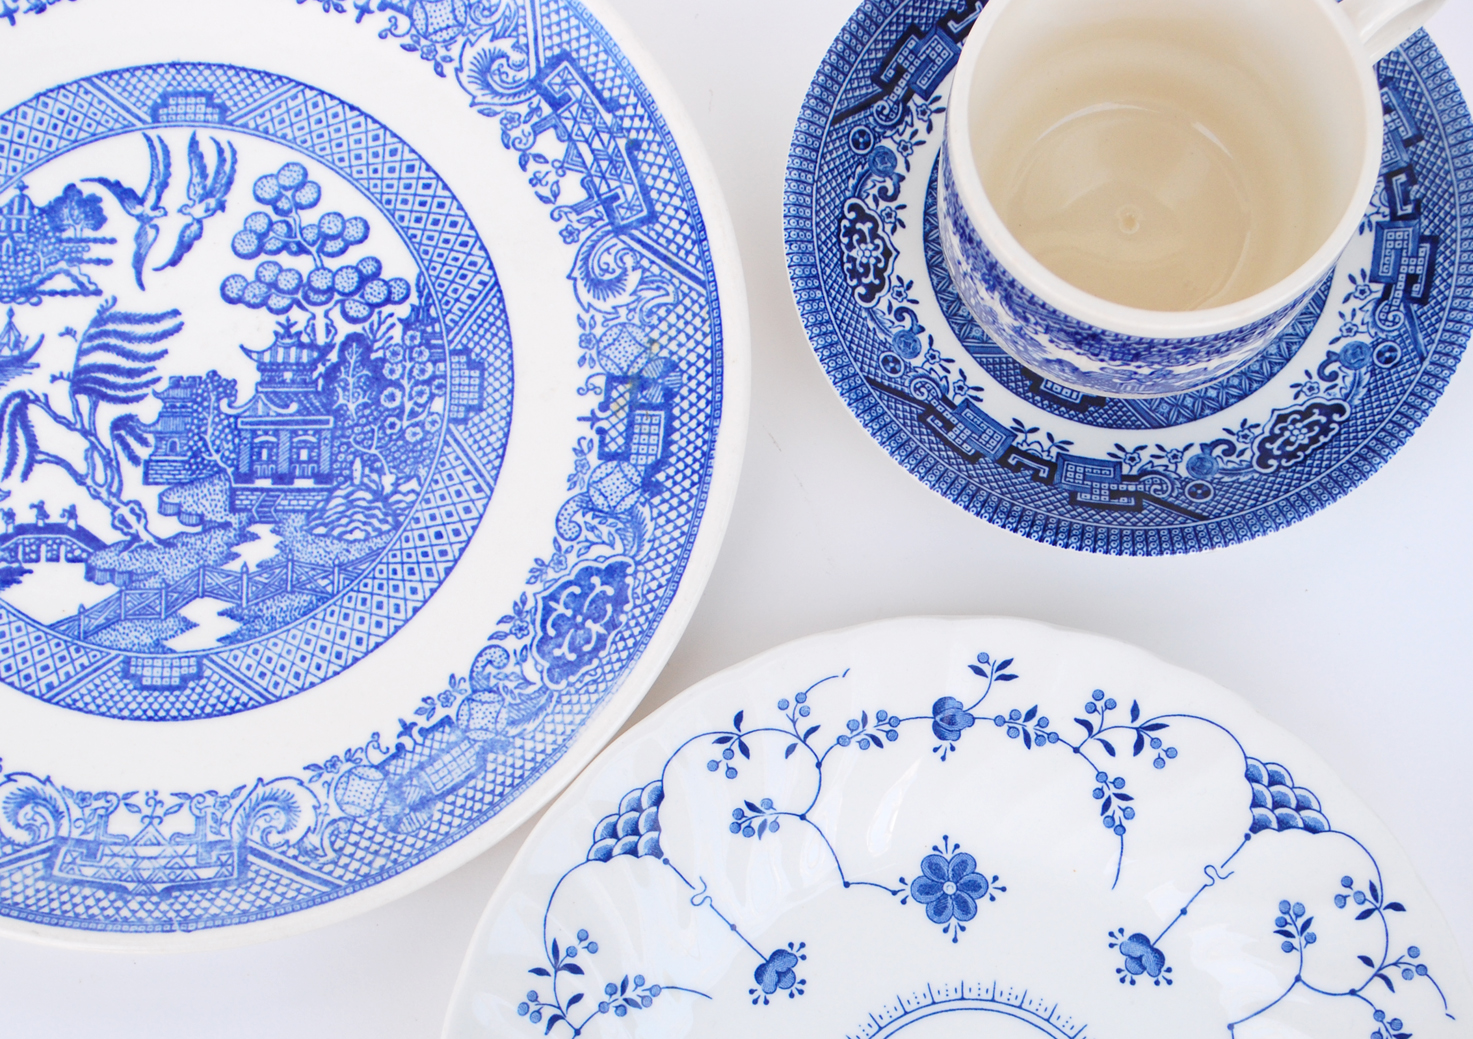 Lots of blue. Посуда с голубыми узорами. Посуда в голубой цветочек. Тарелки Китай голубые. Посуда с синим орнаментом.